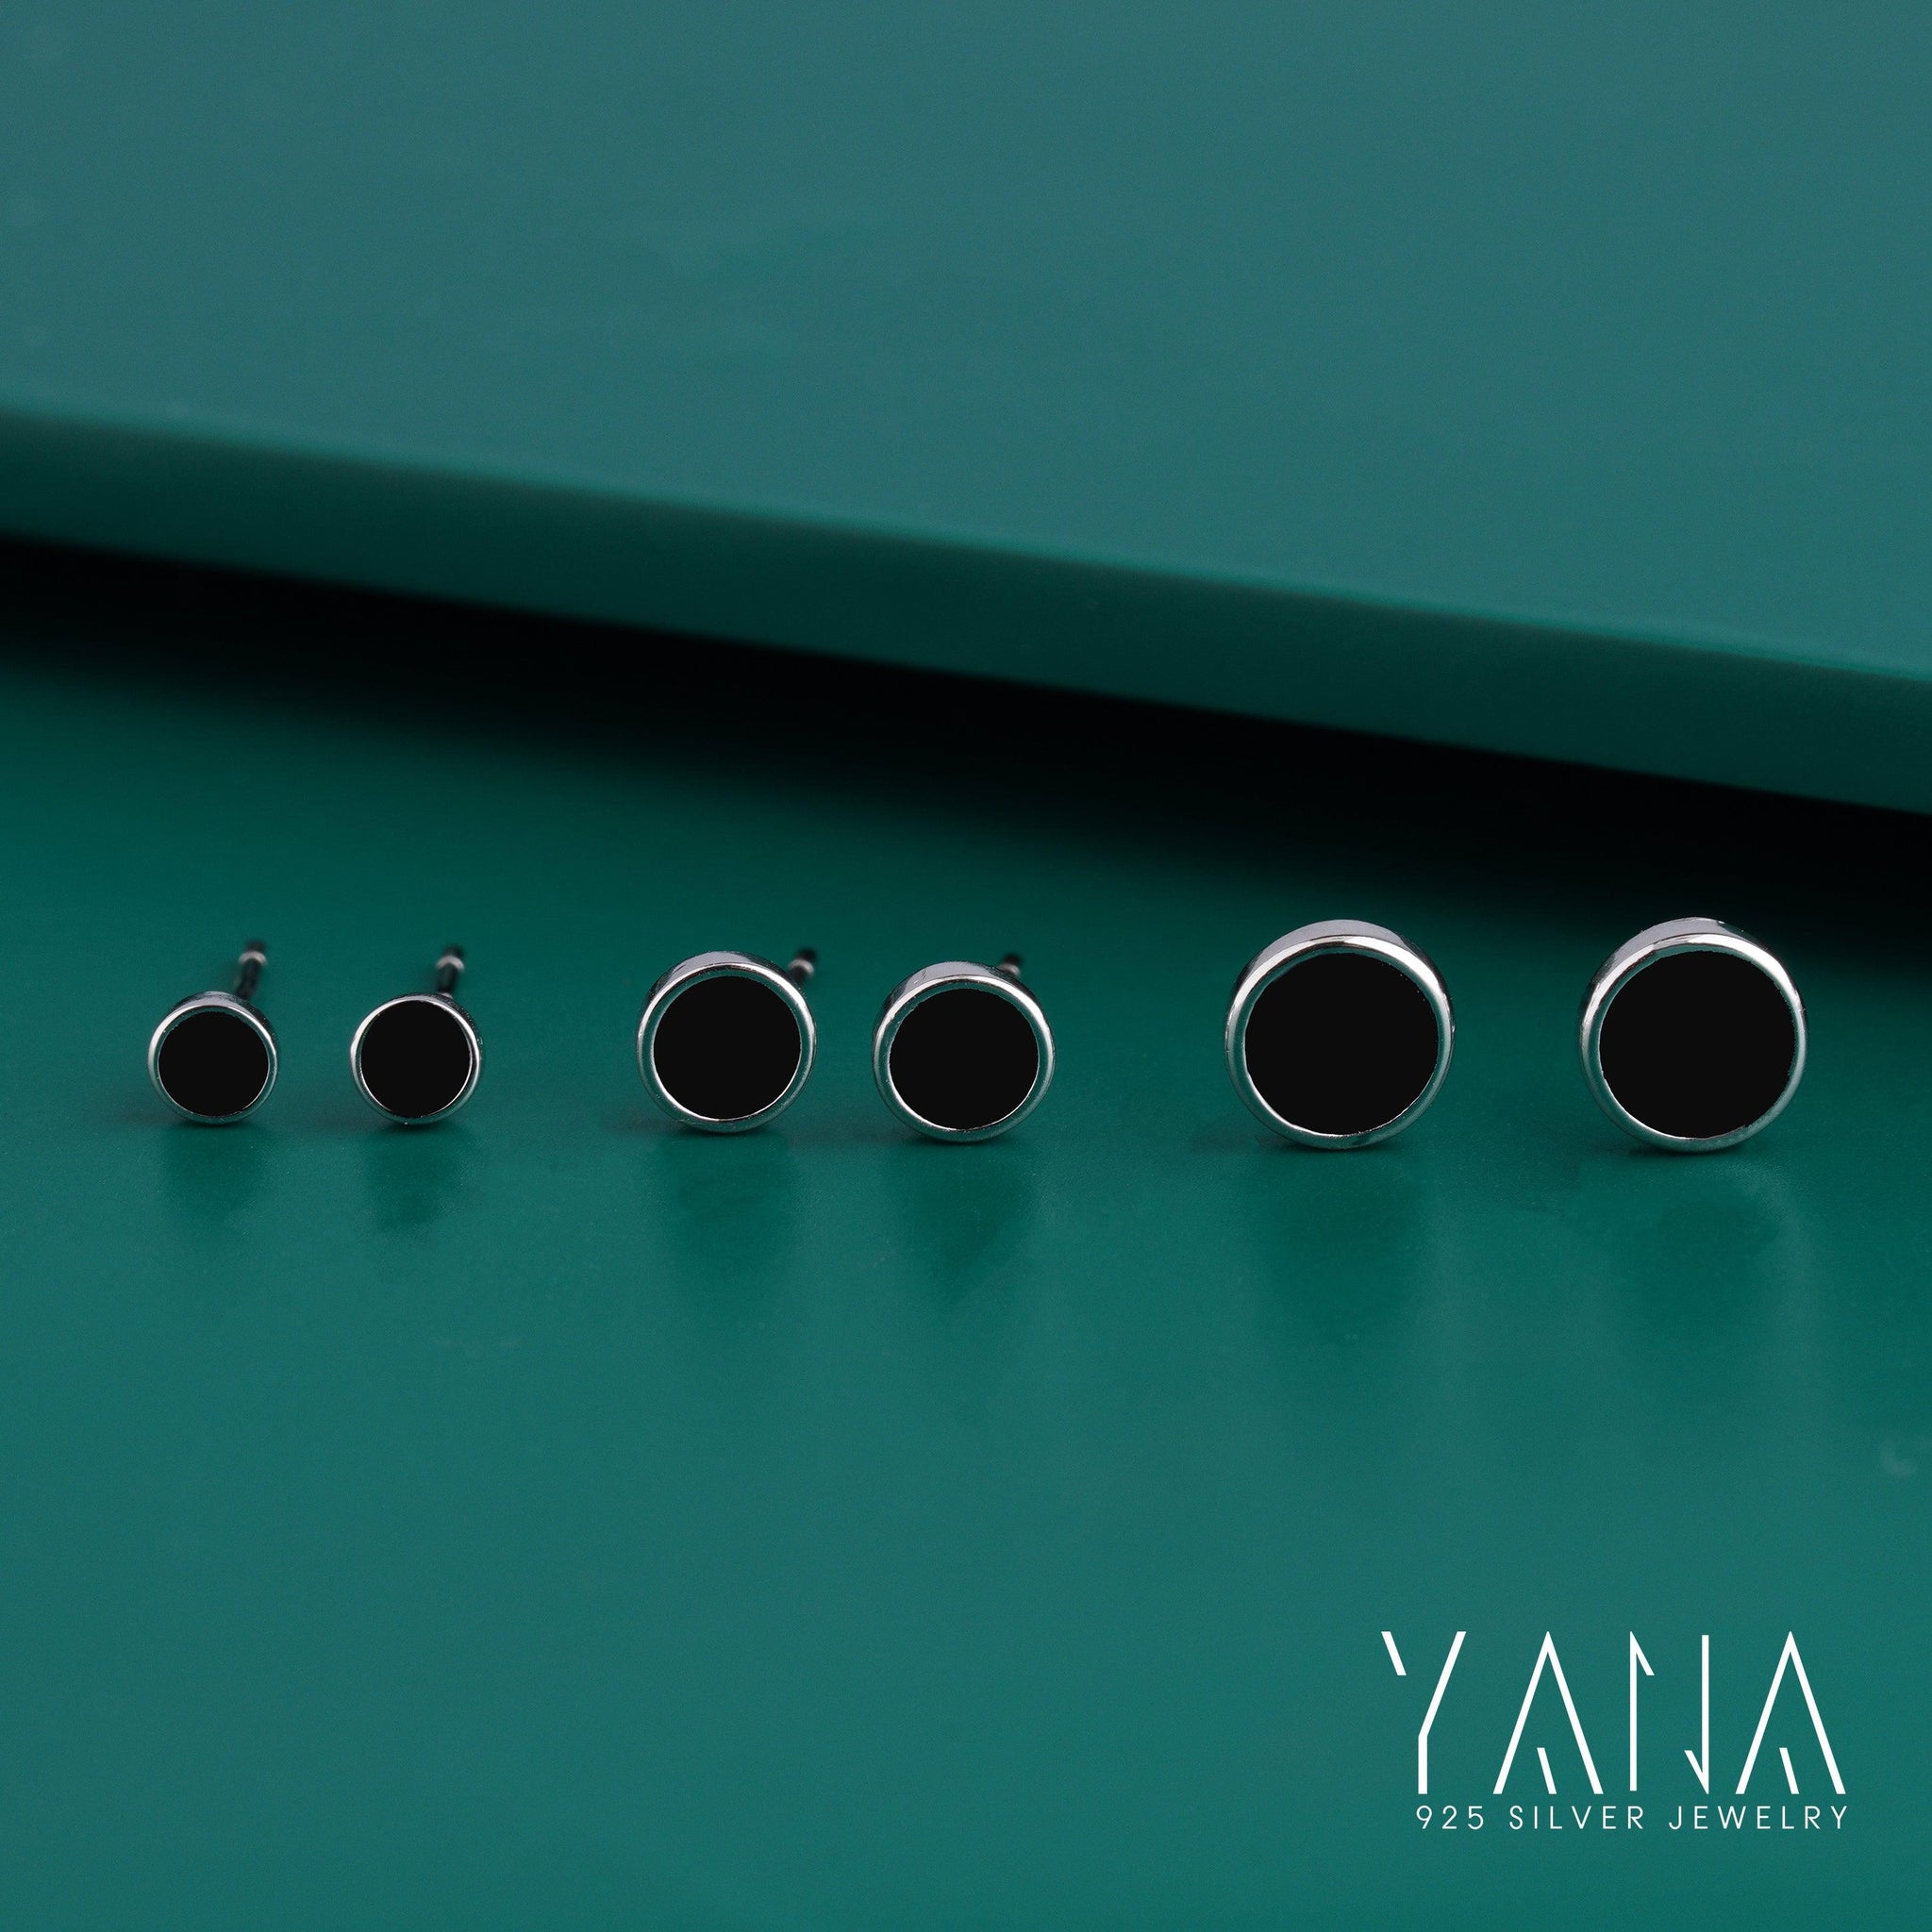 Black Onyx Cufflinks Studs Three Set Earrings For Multi Use In 925 Sterling Silver - YANA SILVER